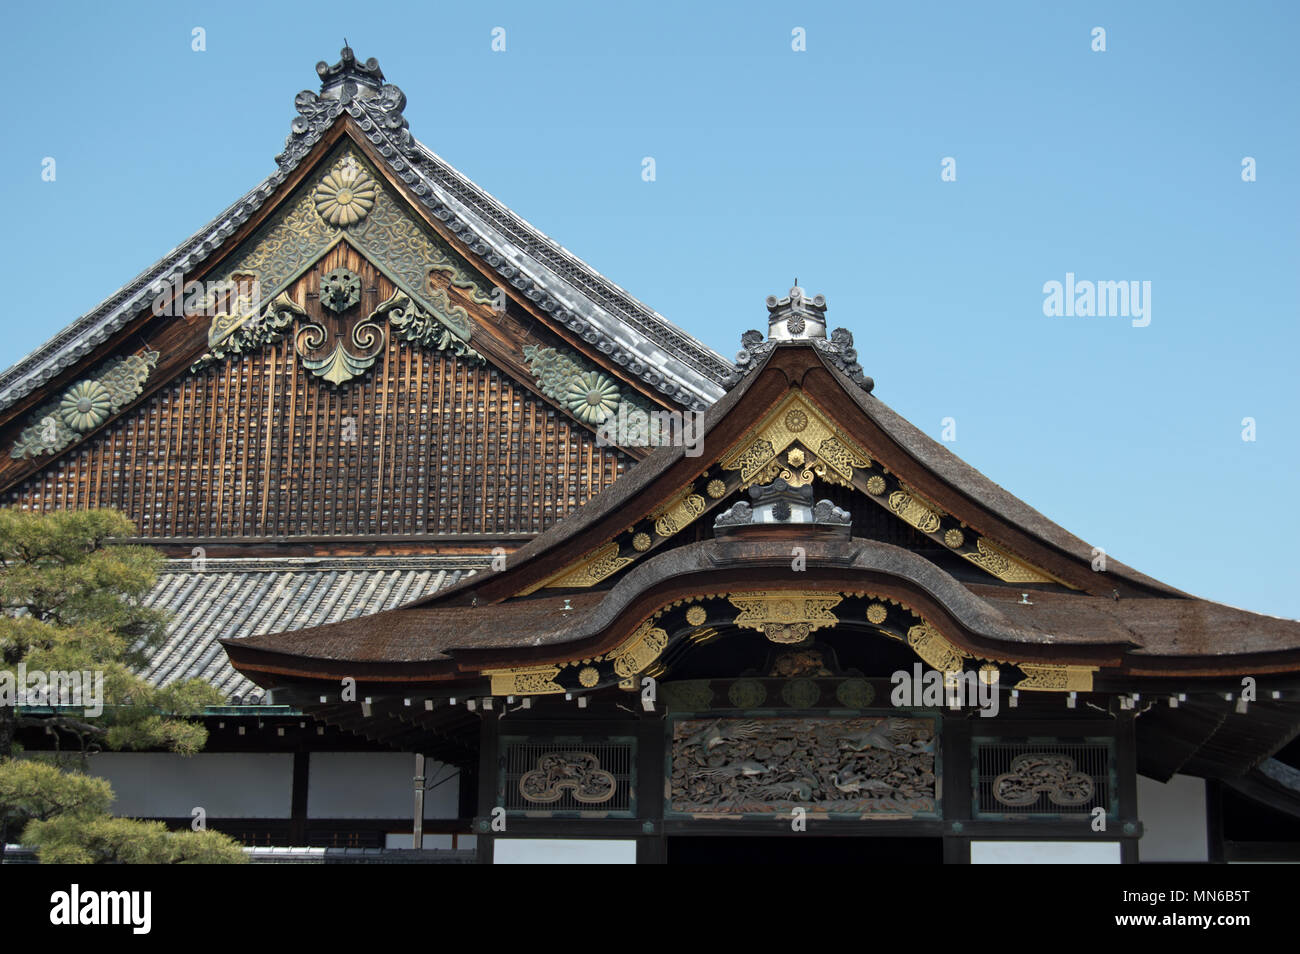 Ninomaru Palace at Nijo Castle, Kyoto, Japan Stock Photo